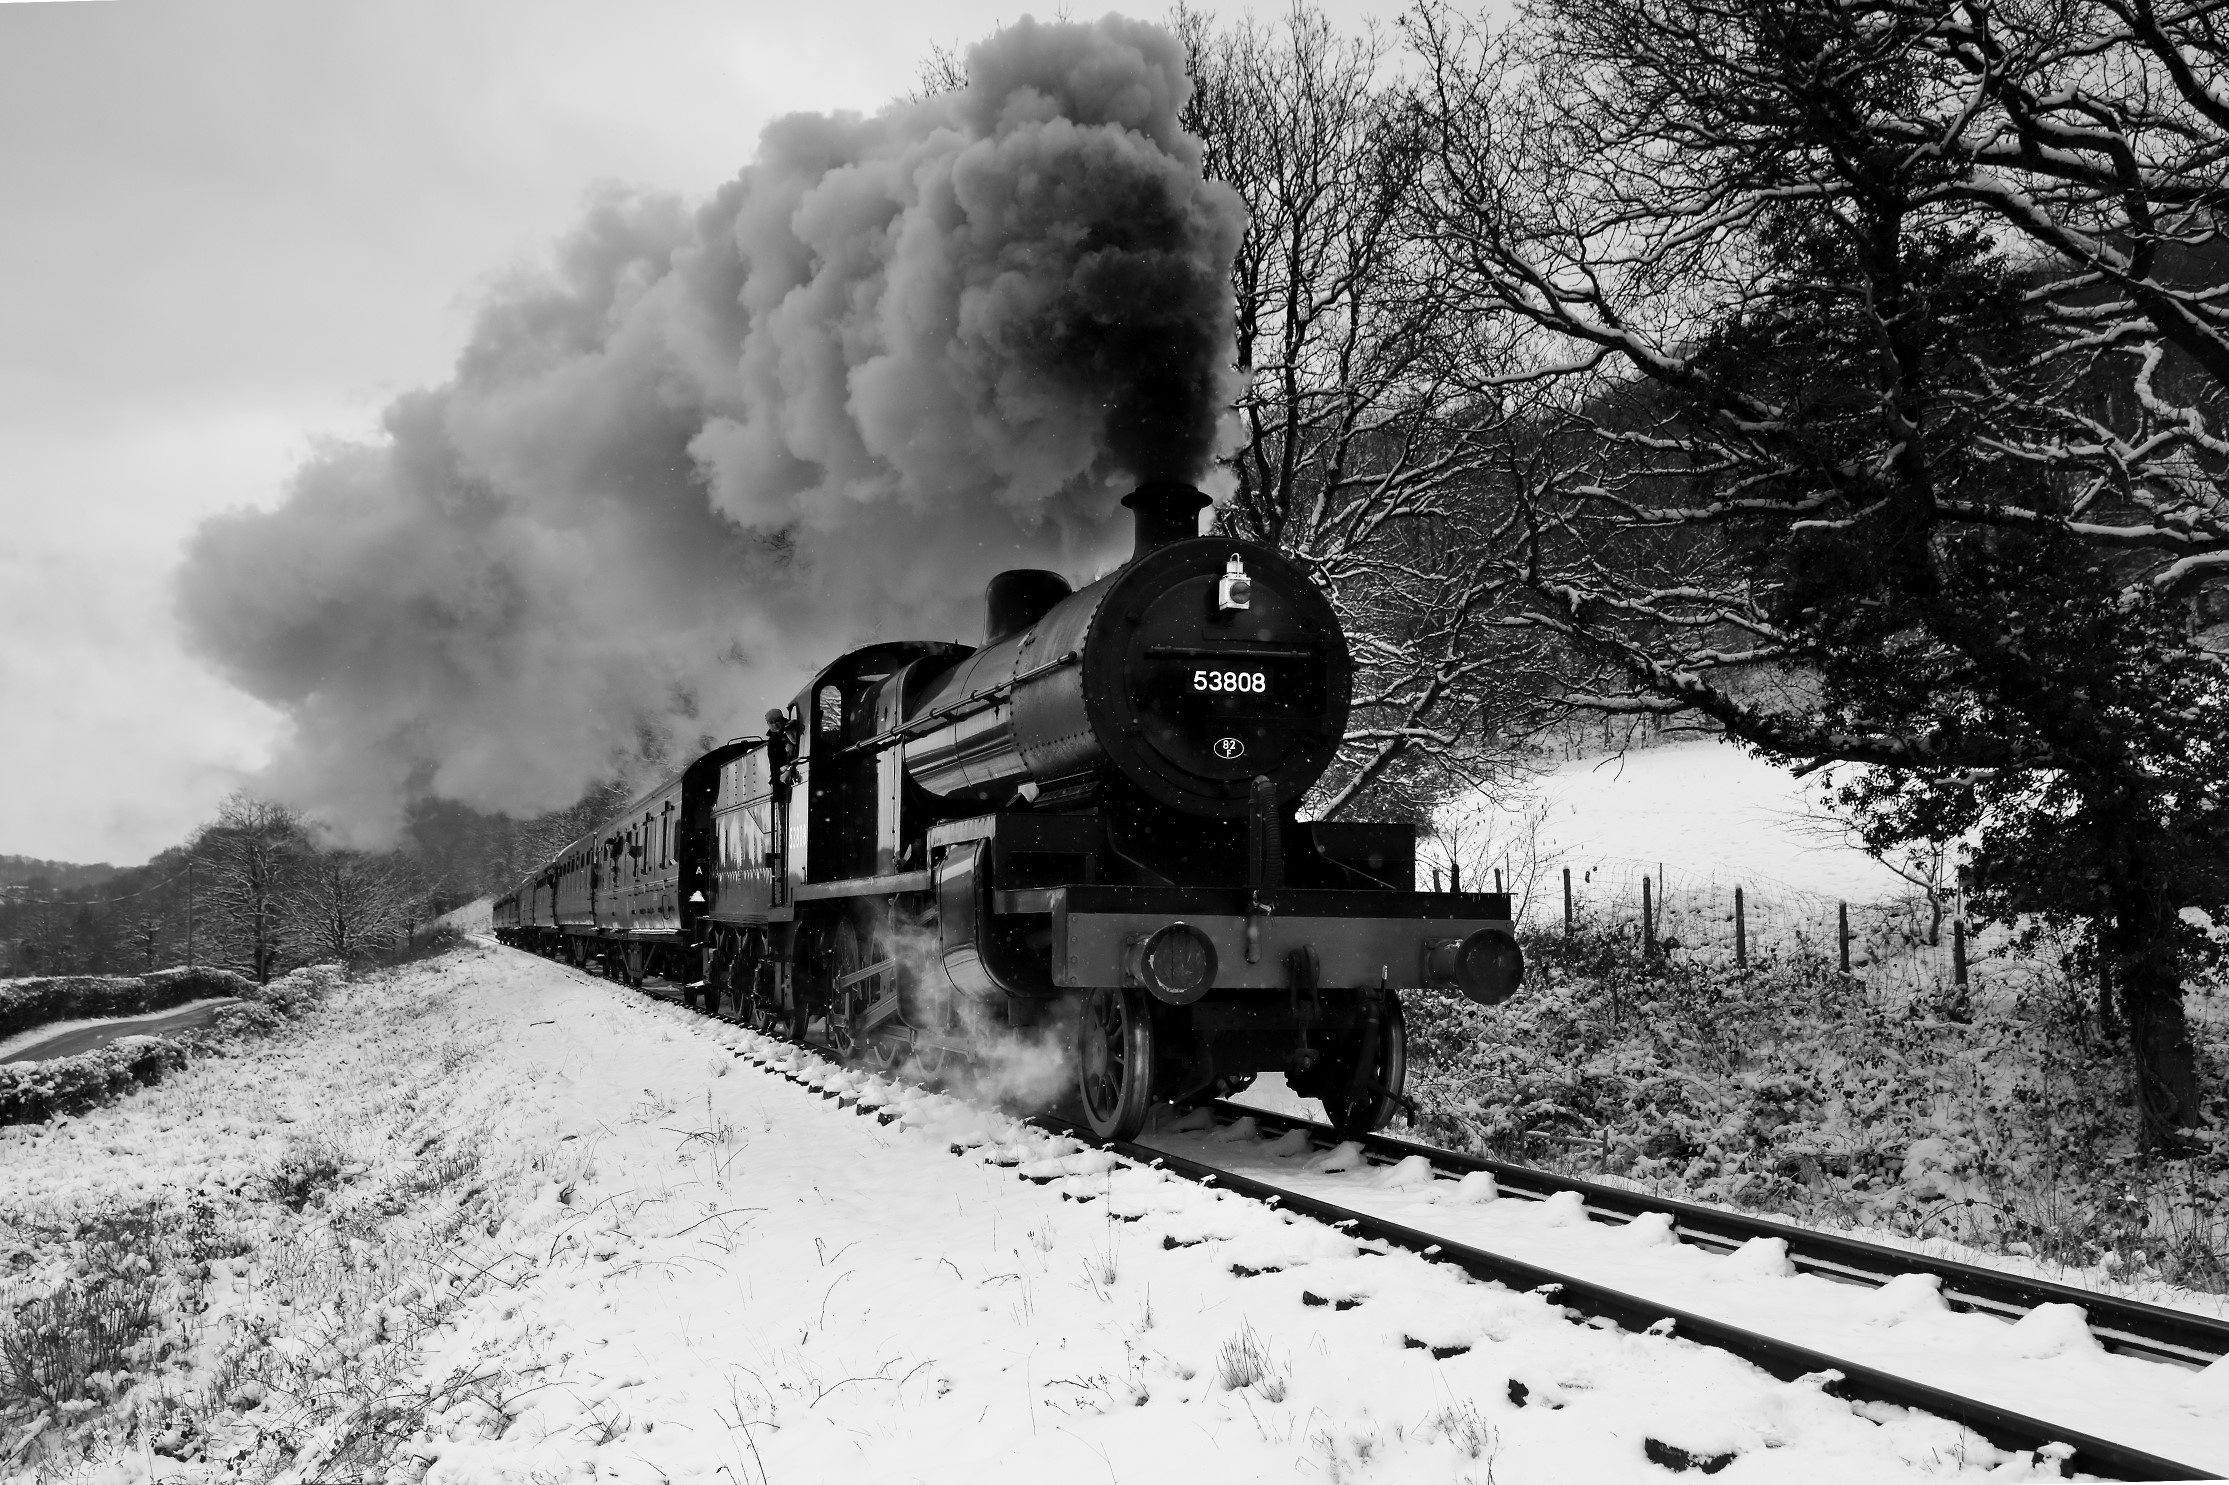 Train in Winter